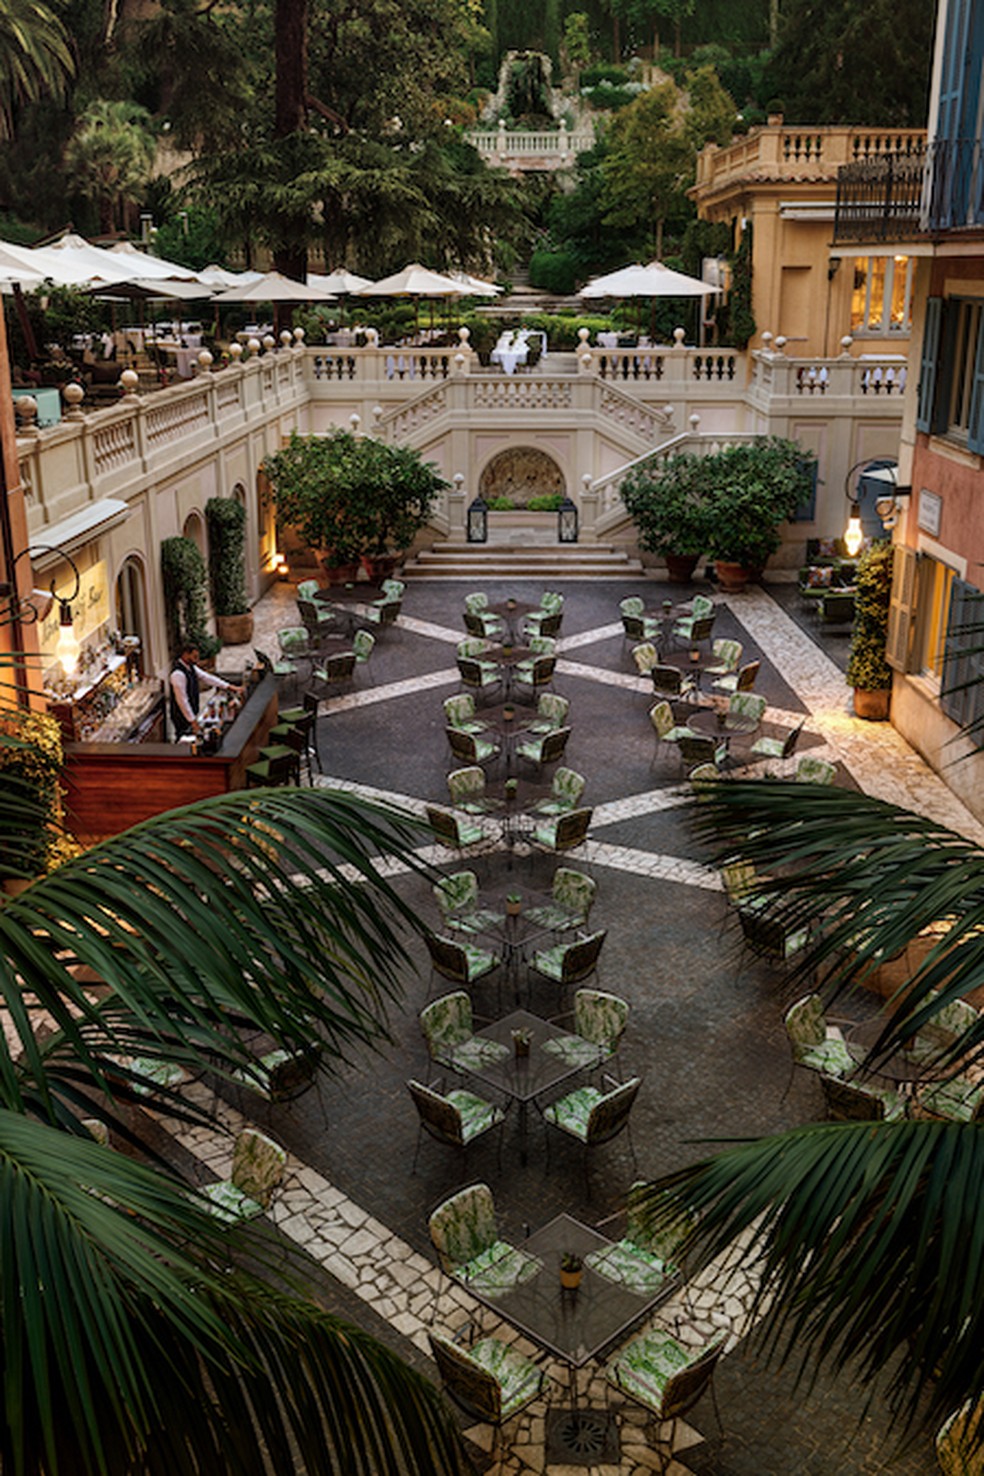 Restaurantes do hotel possuem vista para o jardim secreto — Foto: Divulgação